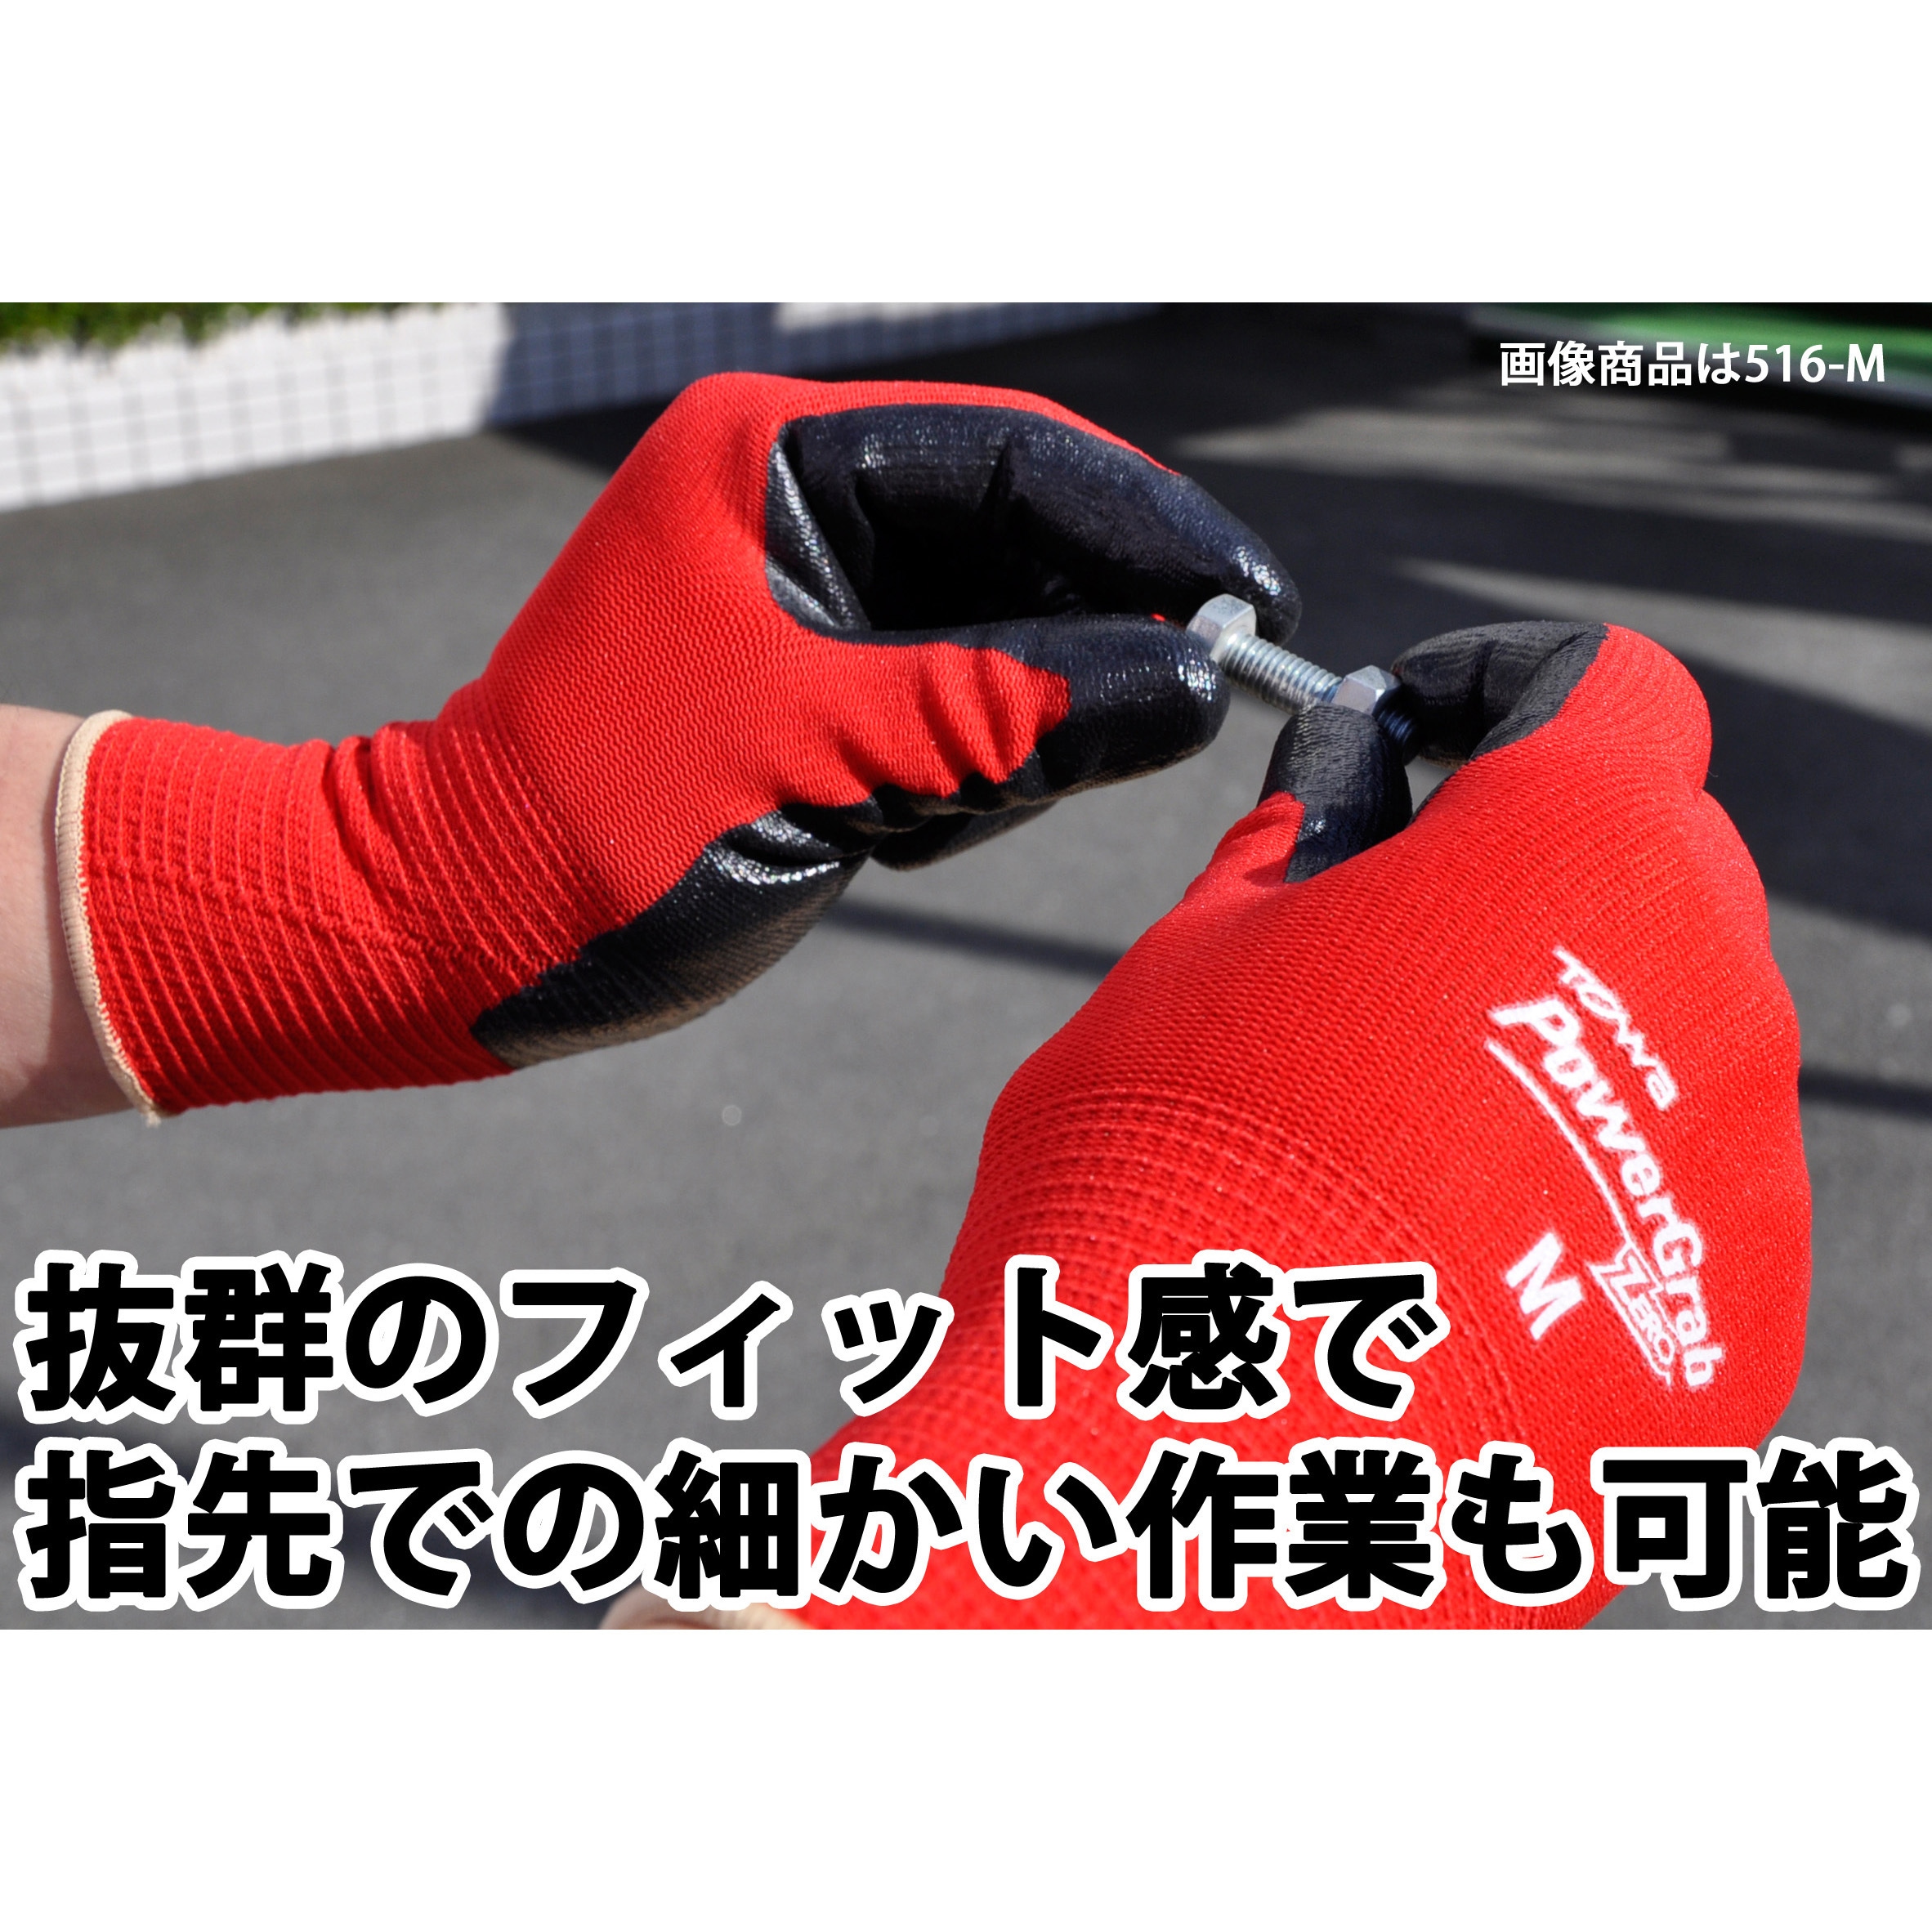 ナイロン製スベリ止め手袋 簡易包装 トップフィット手袋  (240双入)  ショーワグローブ - 4